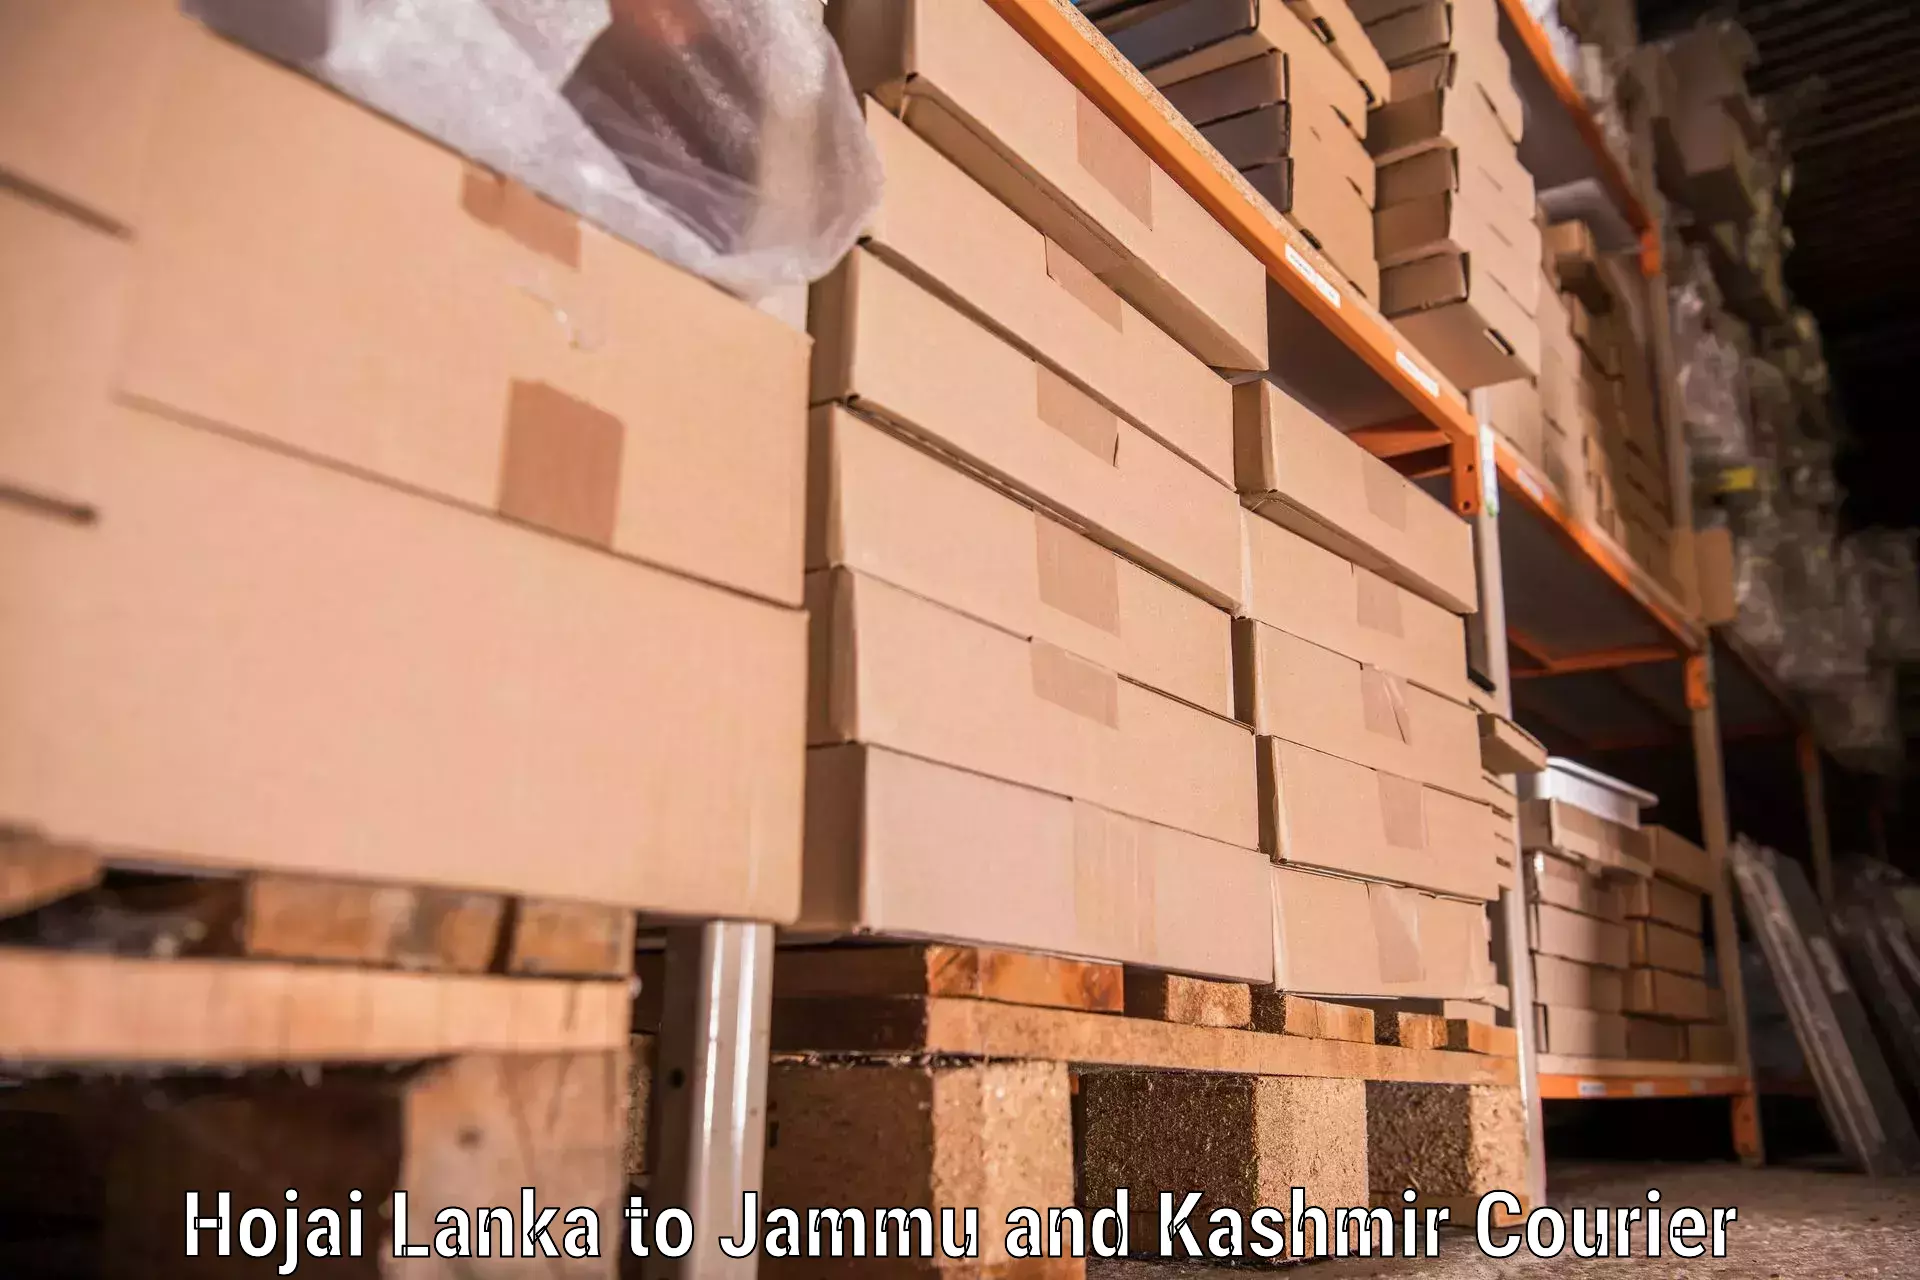 Reliable furniture movers Hojai Lanka to Anantnag